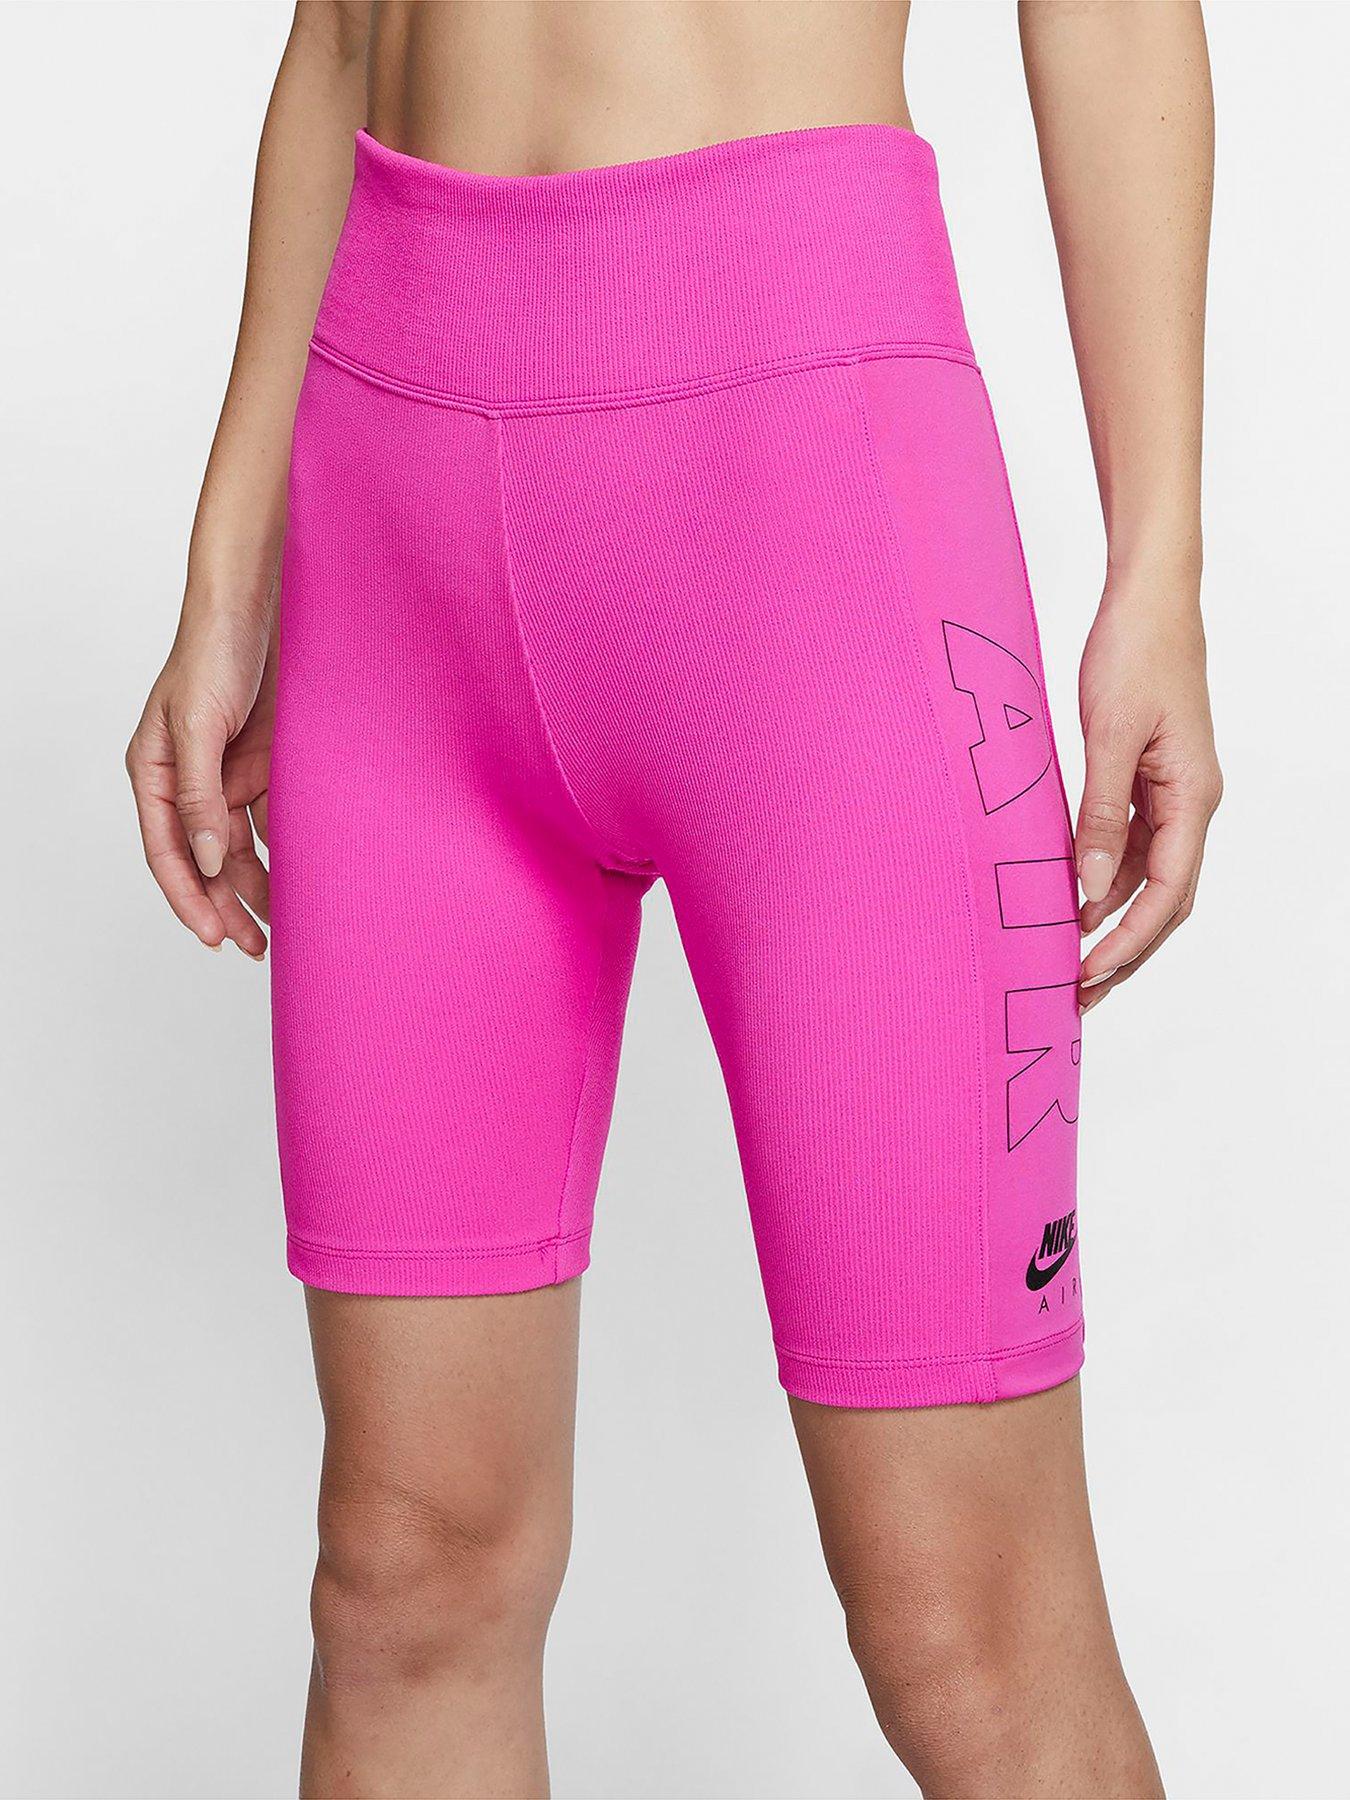 nike pink cycling shorts